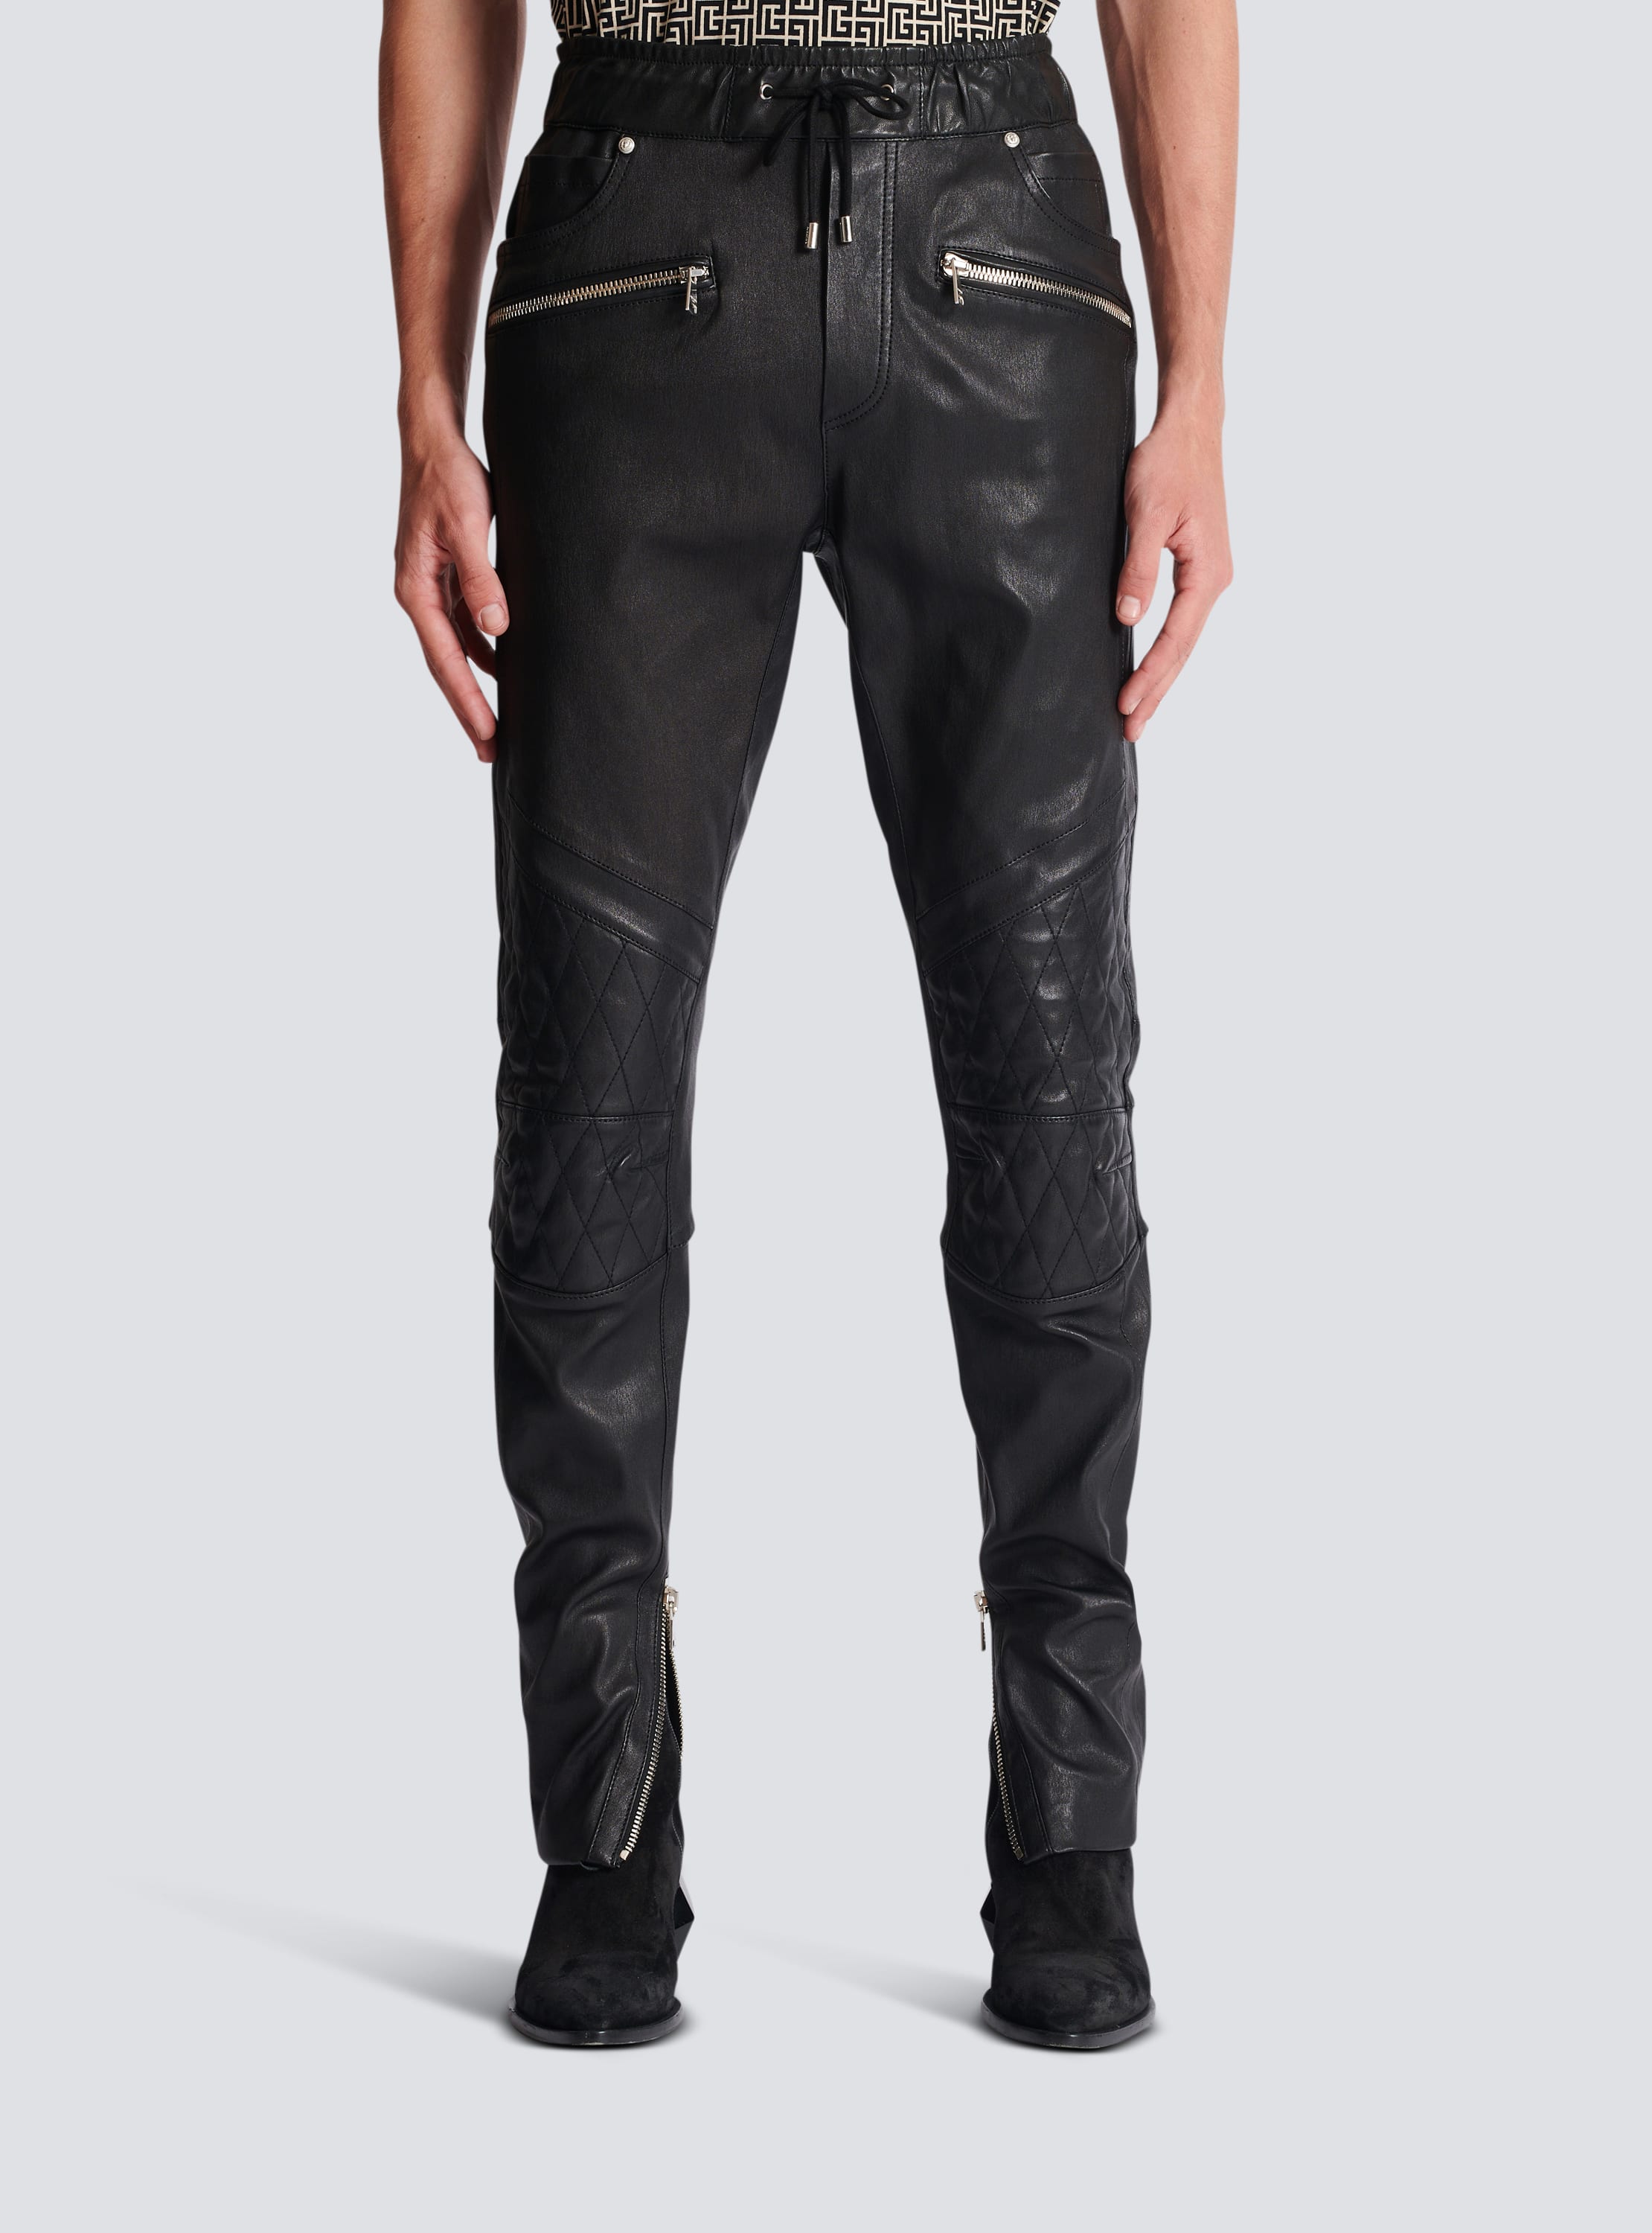 Pierre Balmain Women's Leather Pants FP5305L Black/Blue 38 (US 6) X 30